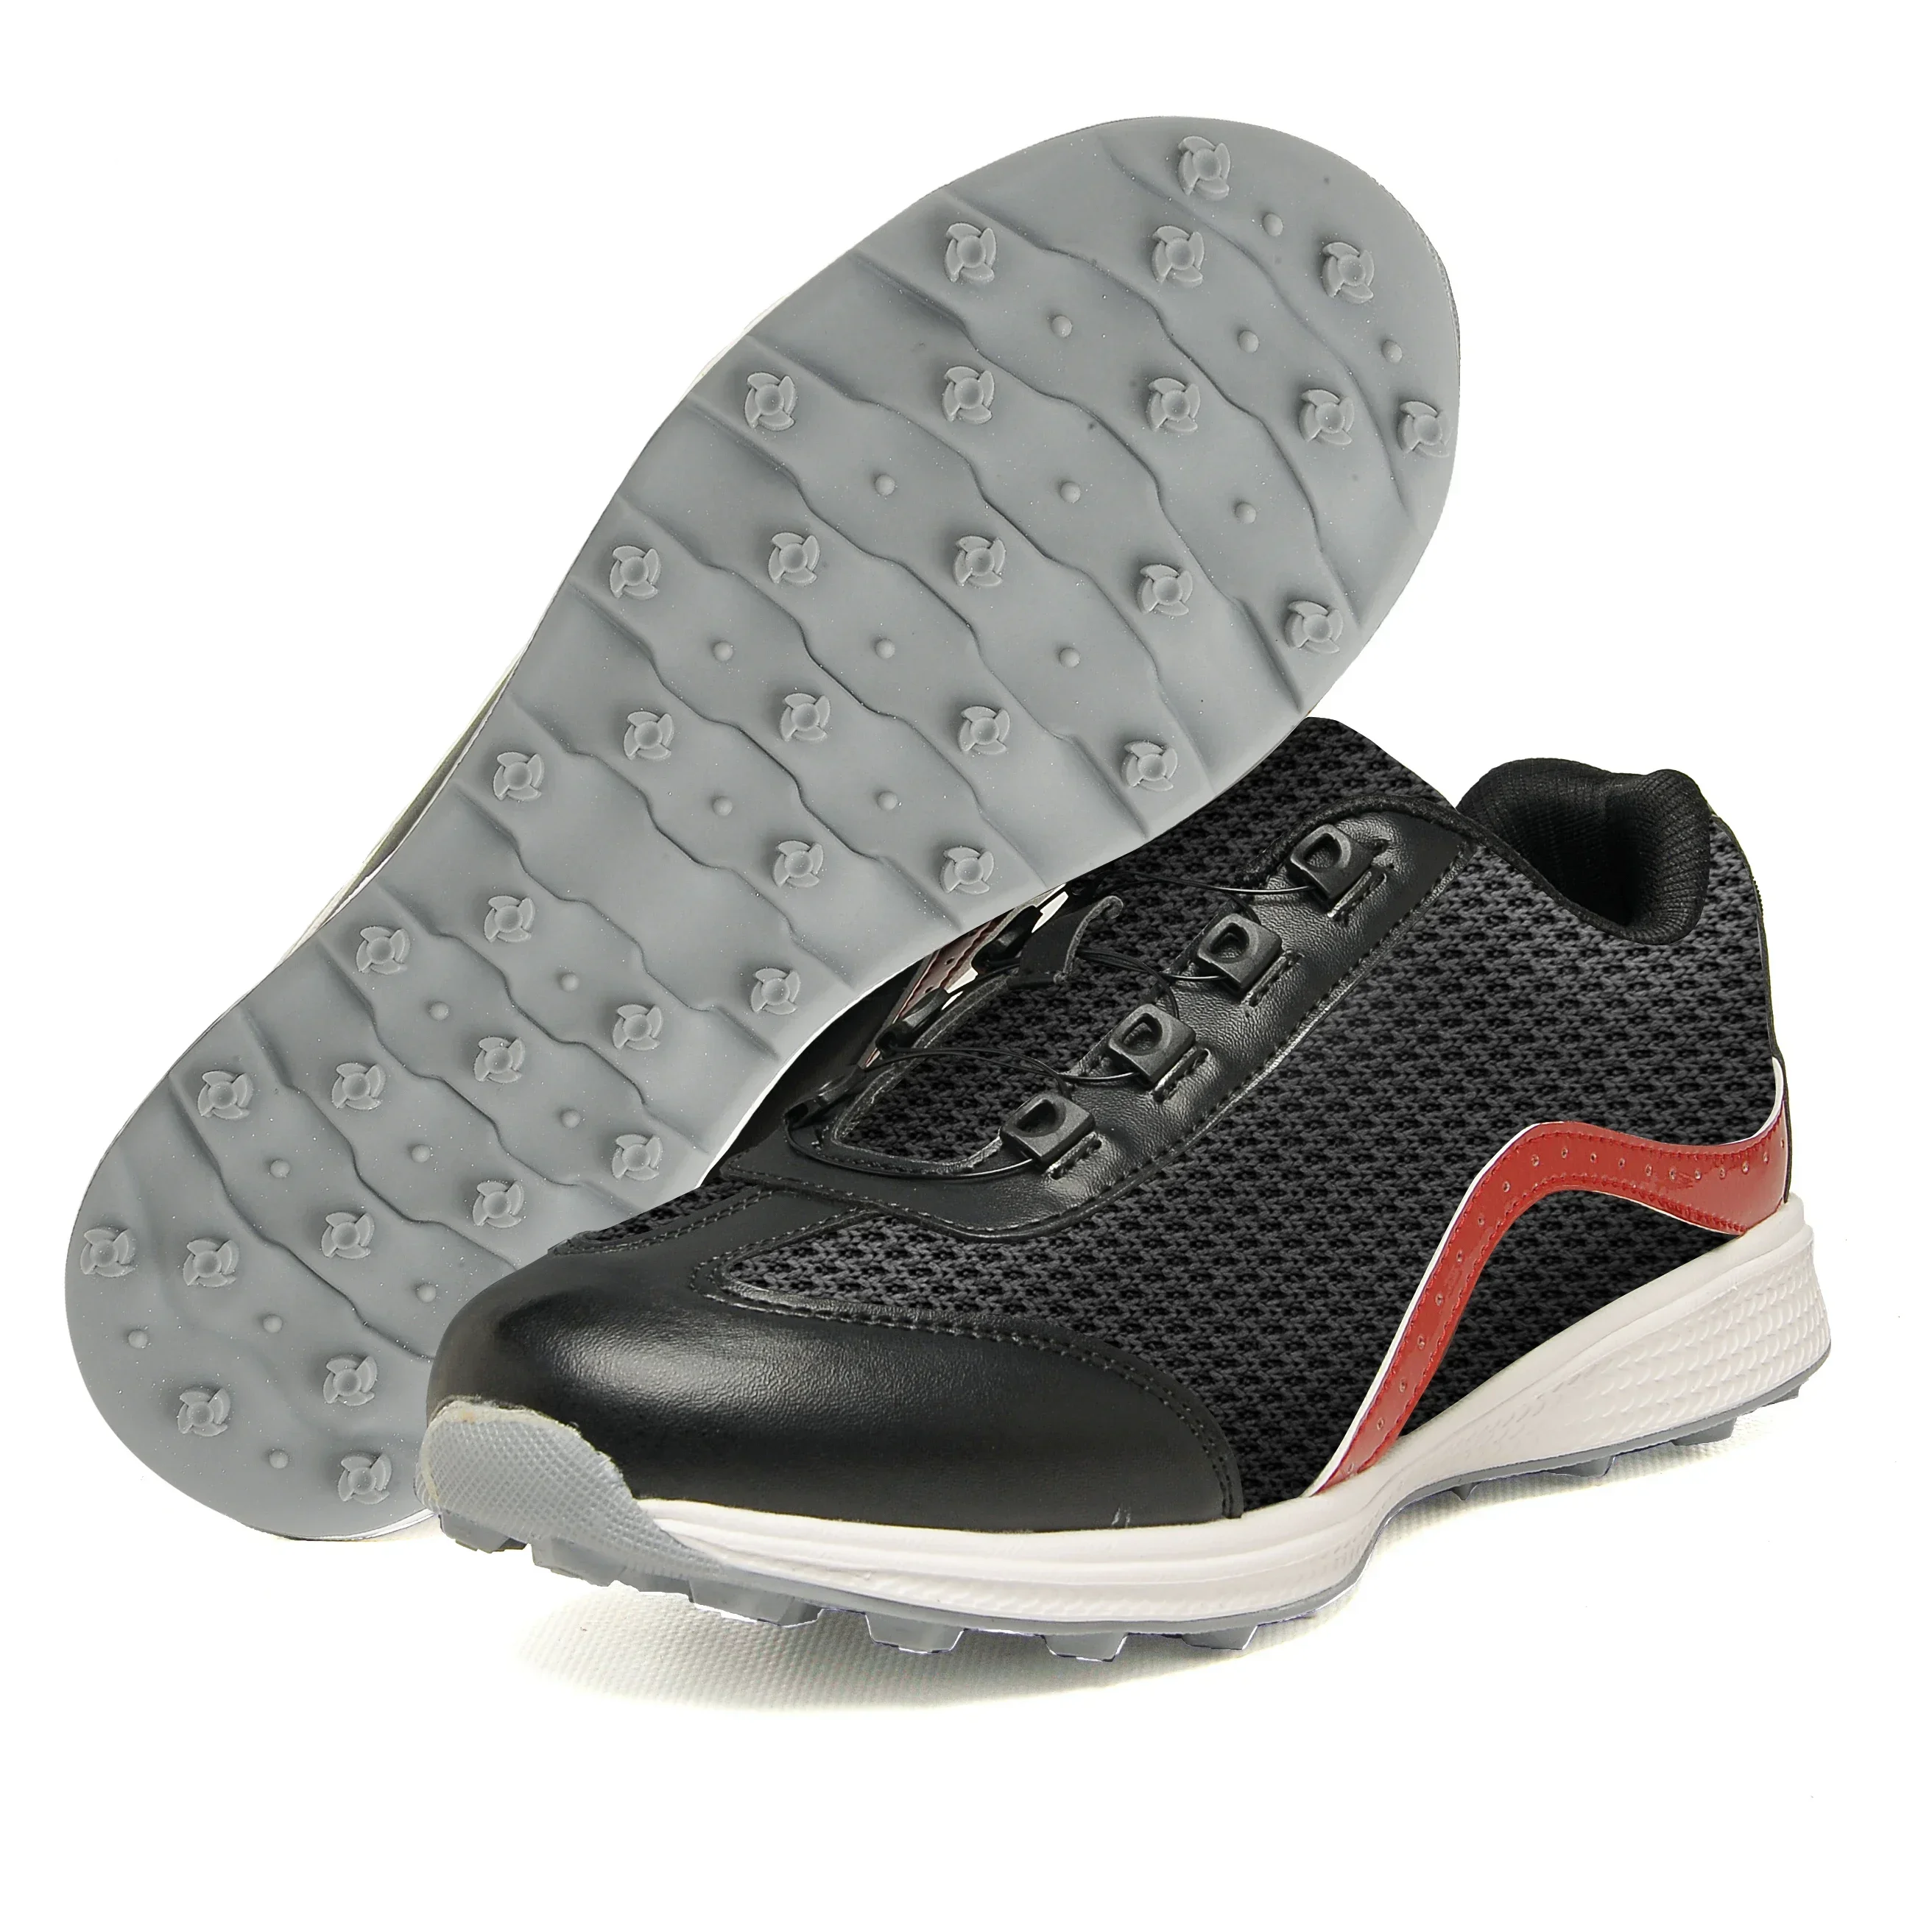 Мужская обувь для гольфа, мужские вращающиеся кроссовки для гольфа на шнурке, Удобная обувь для ходьбы для игроков в гольф, Дышащая обувь для фитнеса, обувь для гольфа